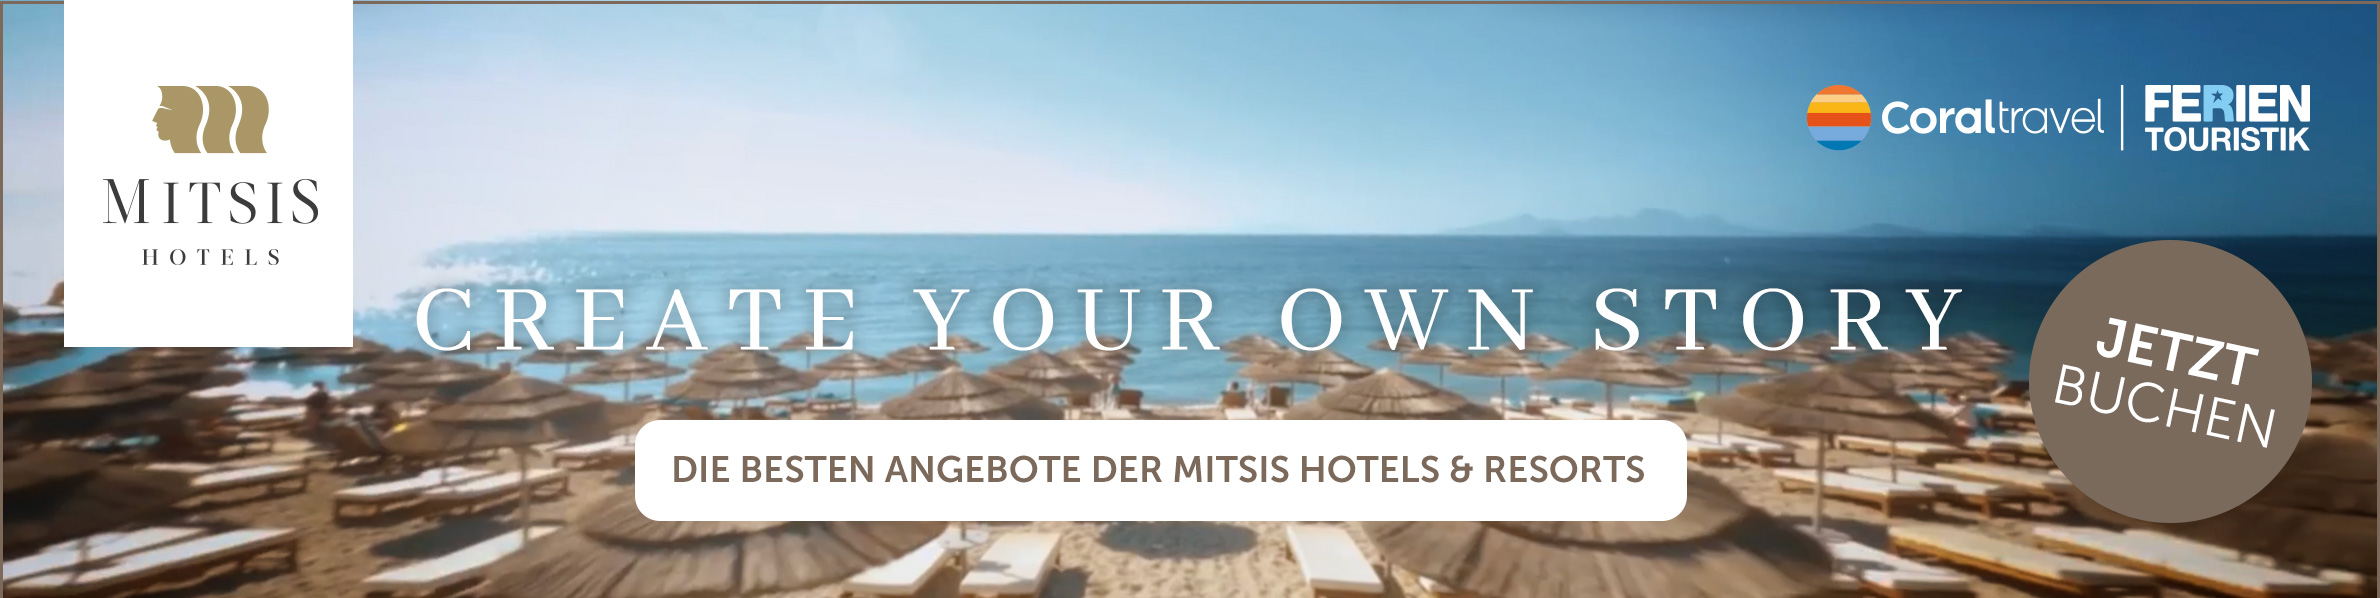 Mitsis Hotels Special - jetzt entdecken & buchen!